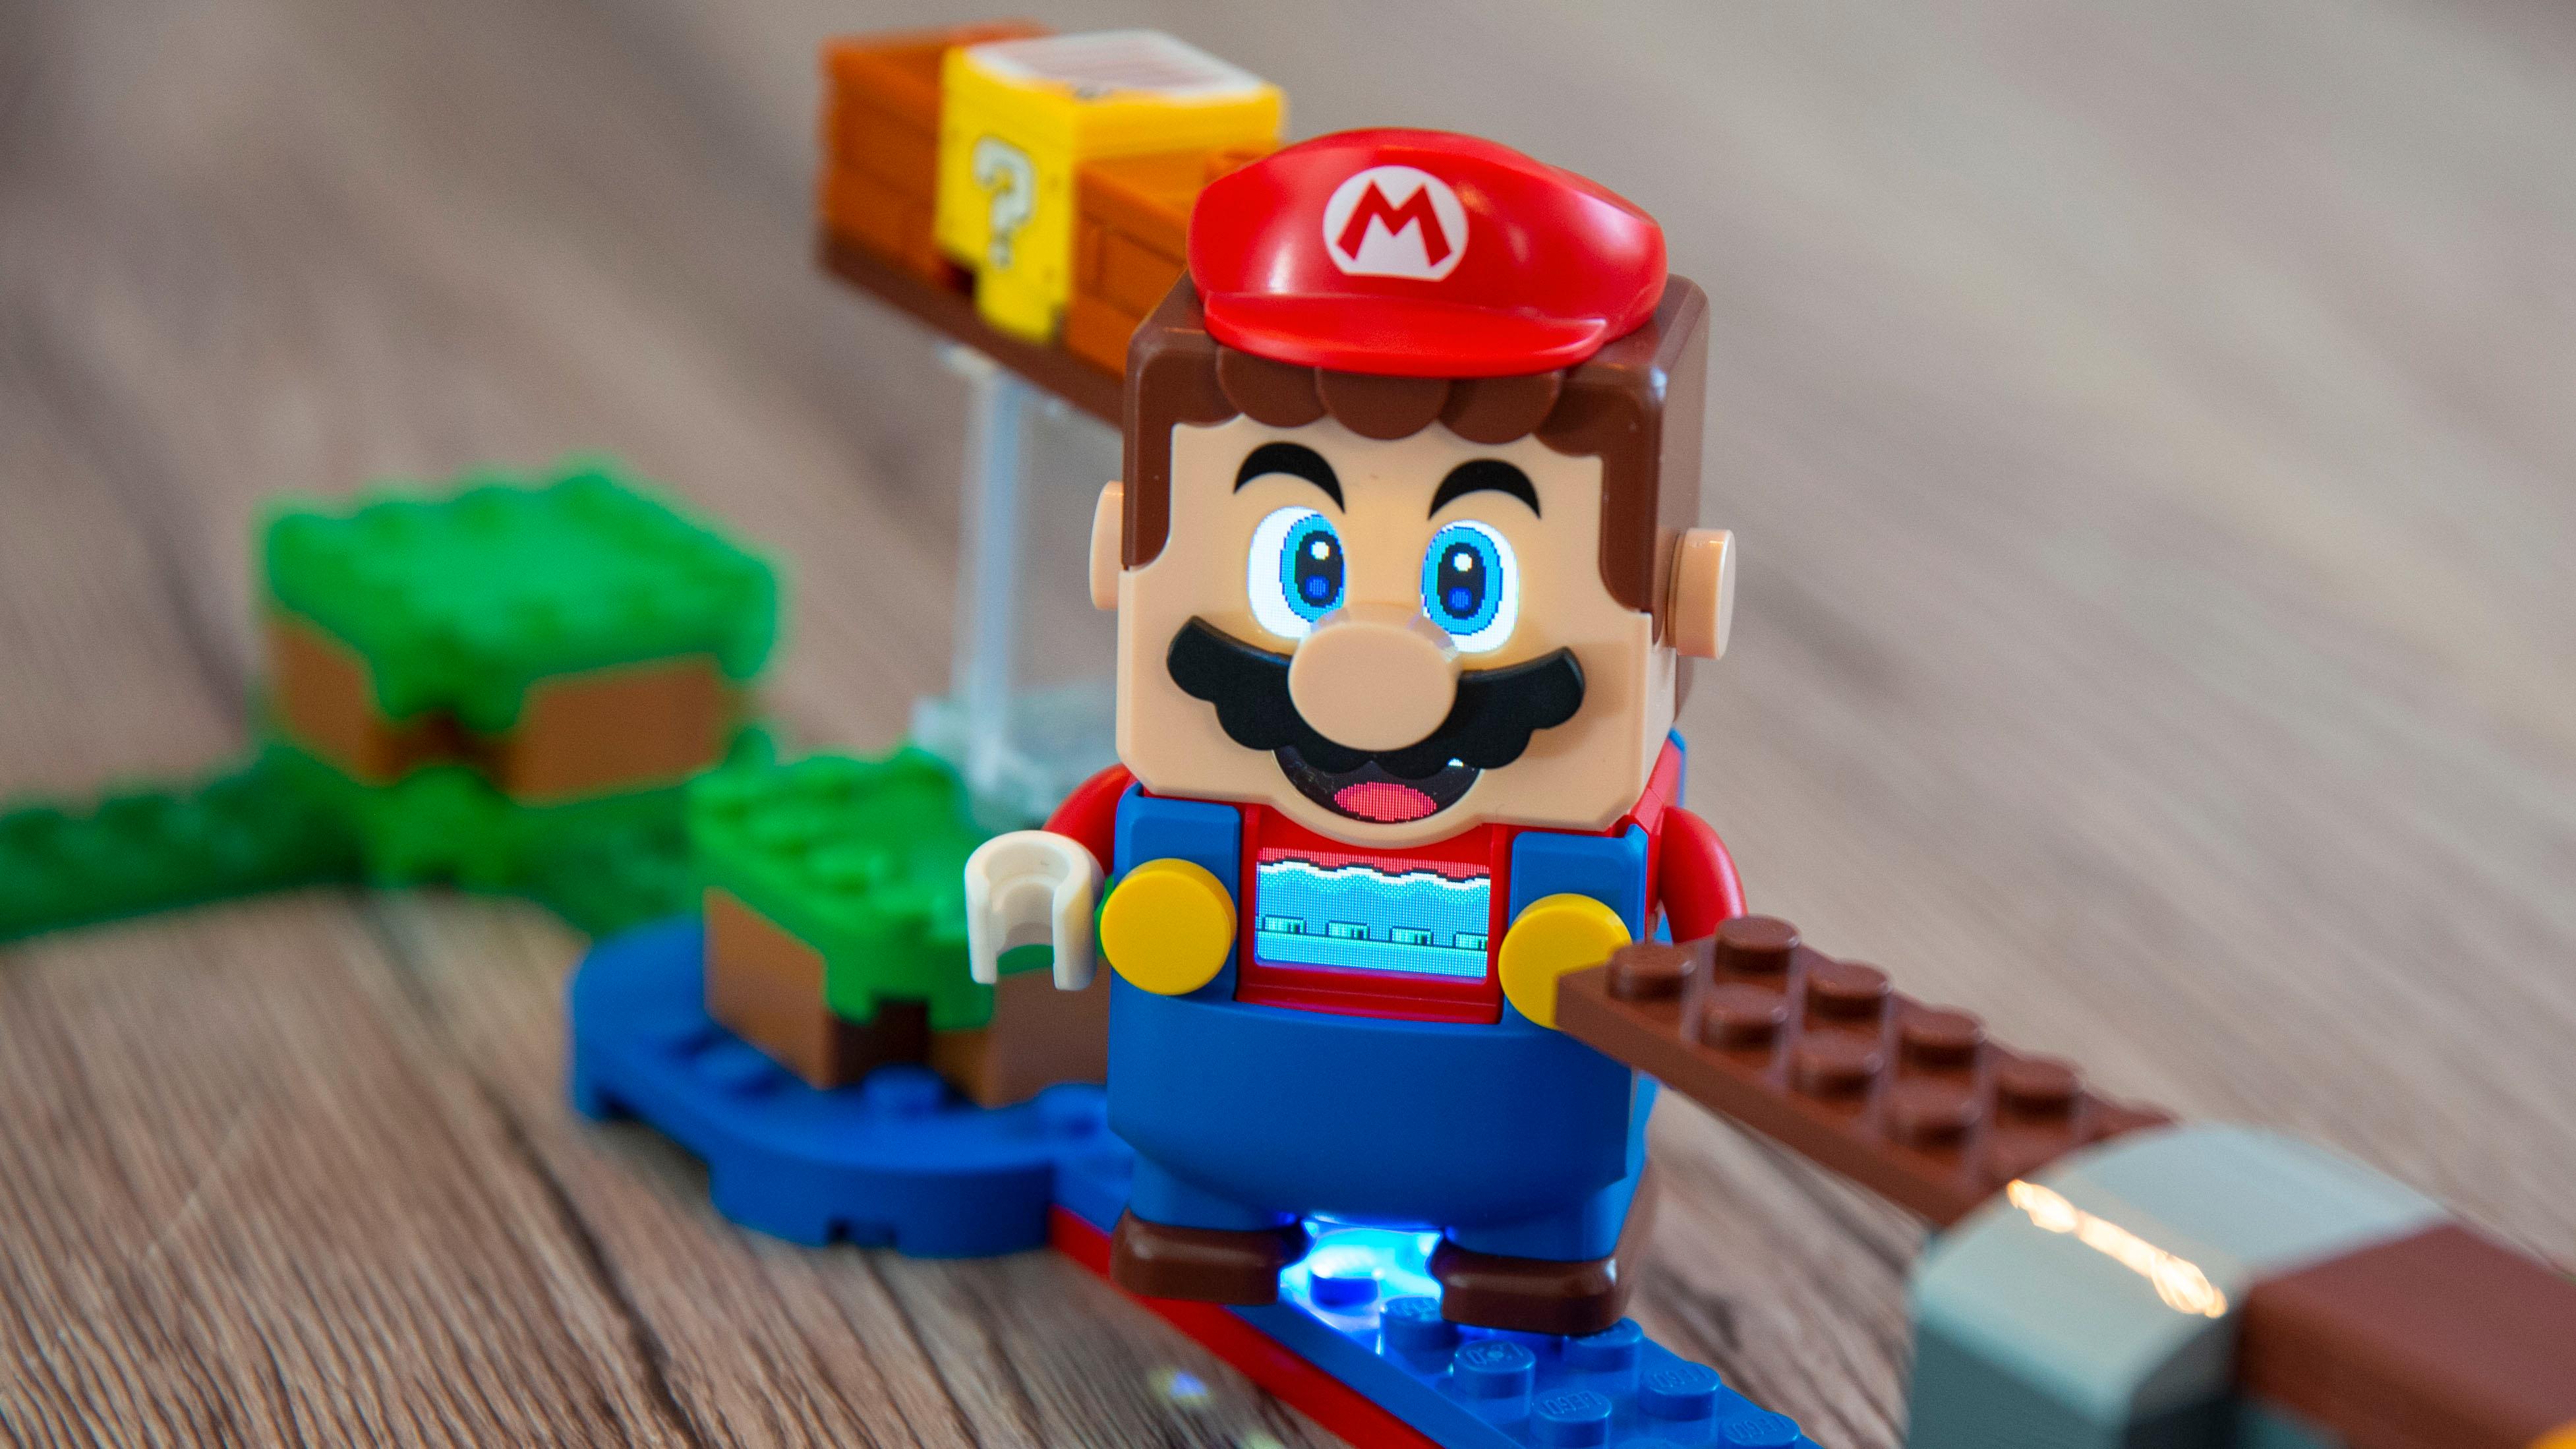 Mario-figuren har skjermer i front som lager øyne, munn og en indikator på brystet. Figuren merker hvilket underlag den er på takket være sensorer. Her er han på vei ut på dypt vann. 